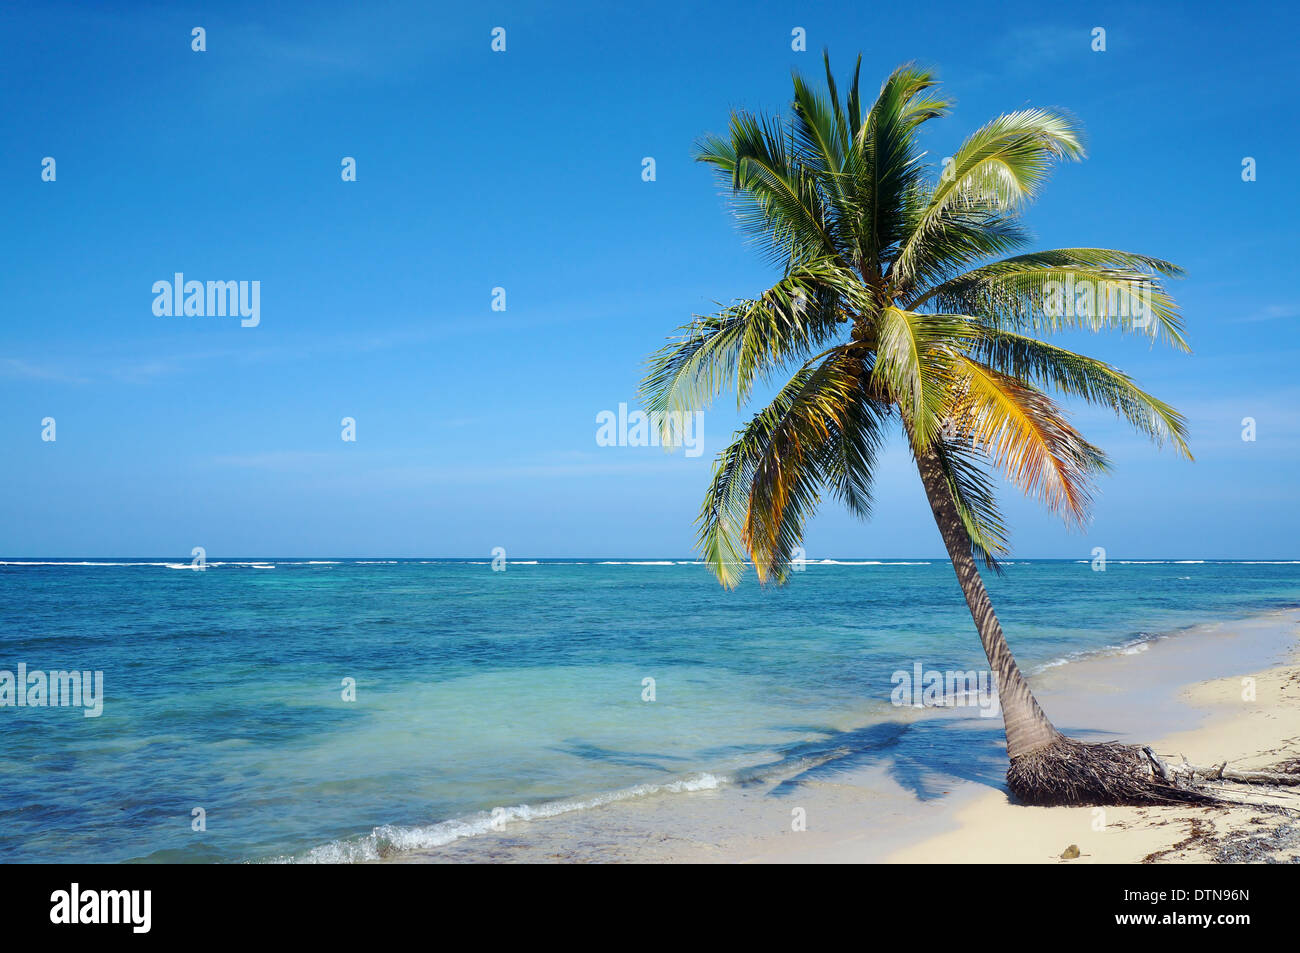 Kokospalme allein auf einem sandigen Strand mit Meer Horizont und blauer Himmel, Karibik, Yucatan, Mexiko Stockfoto